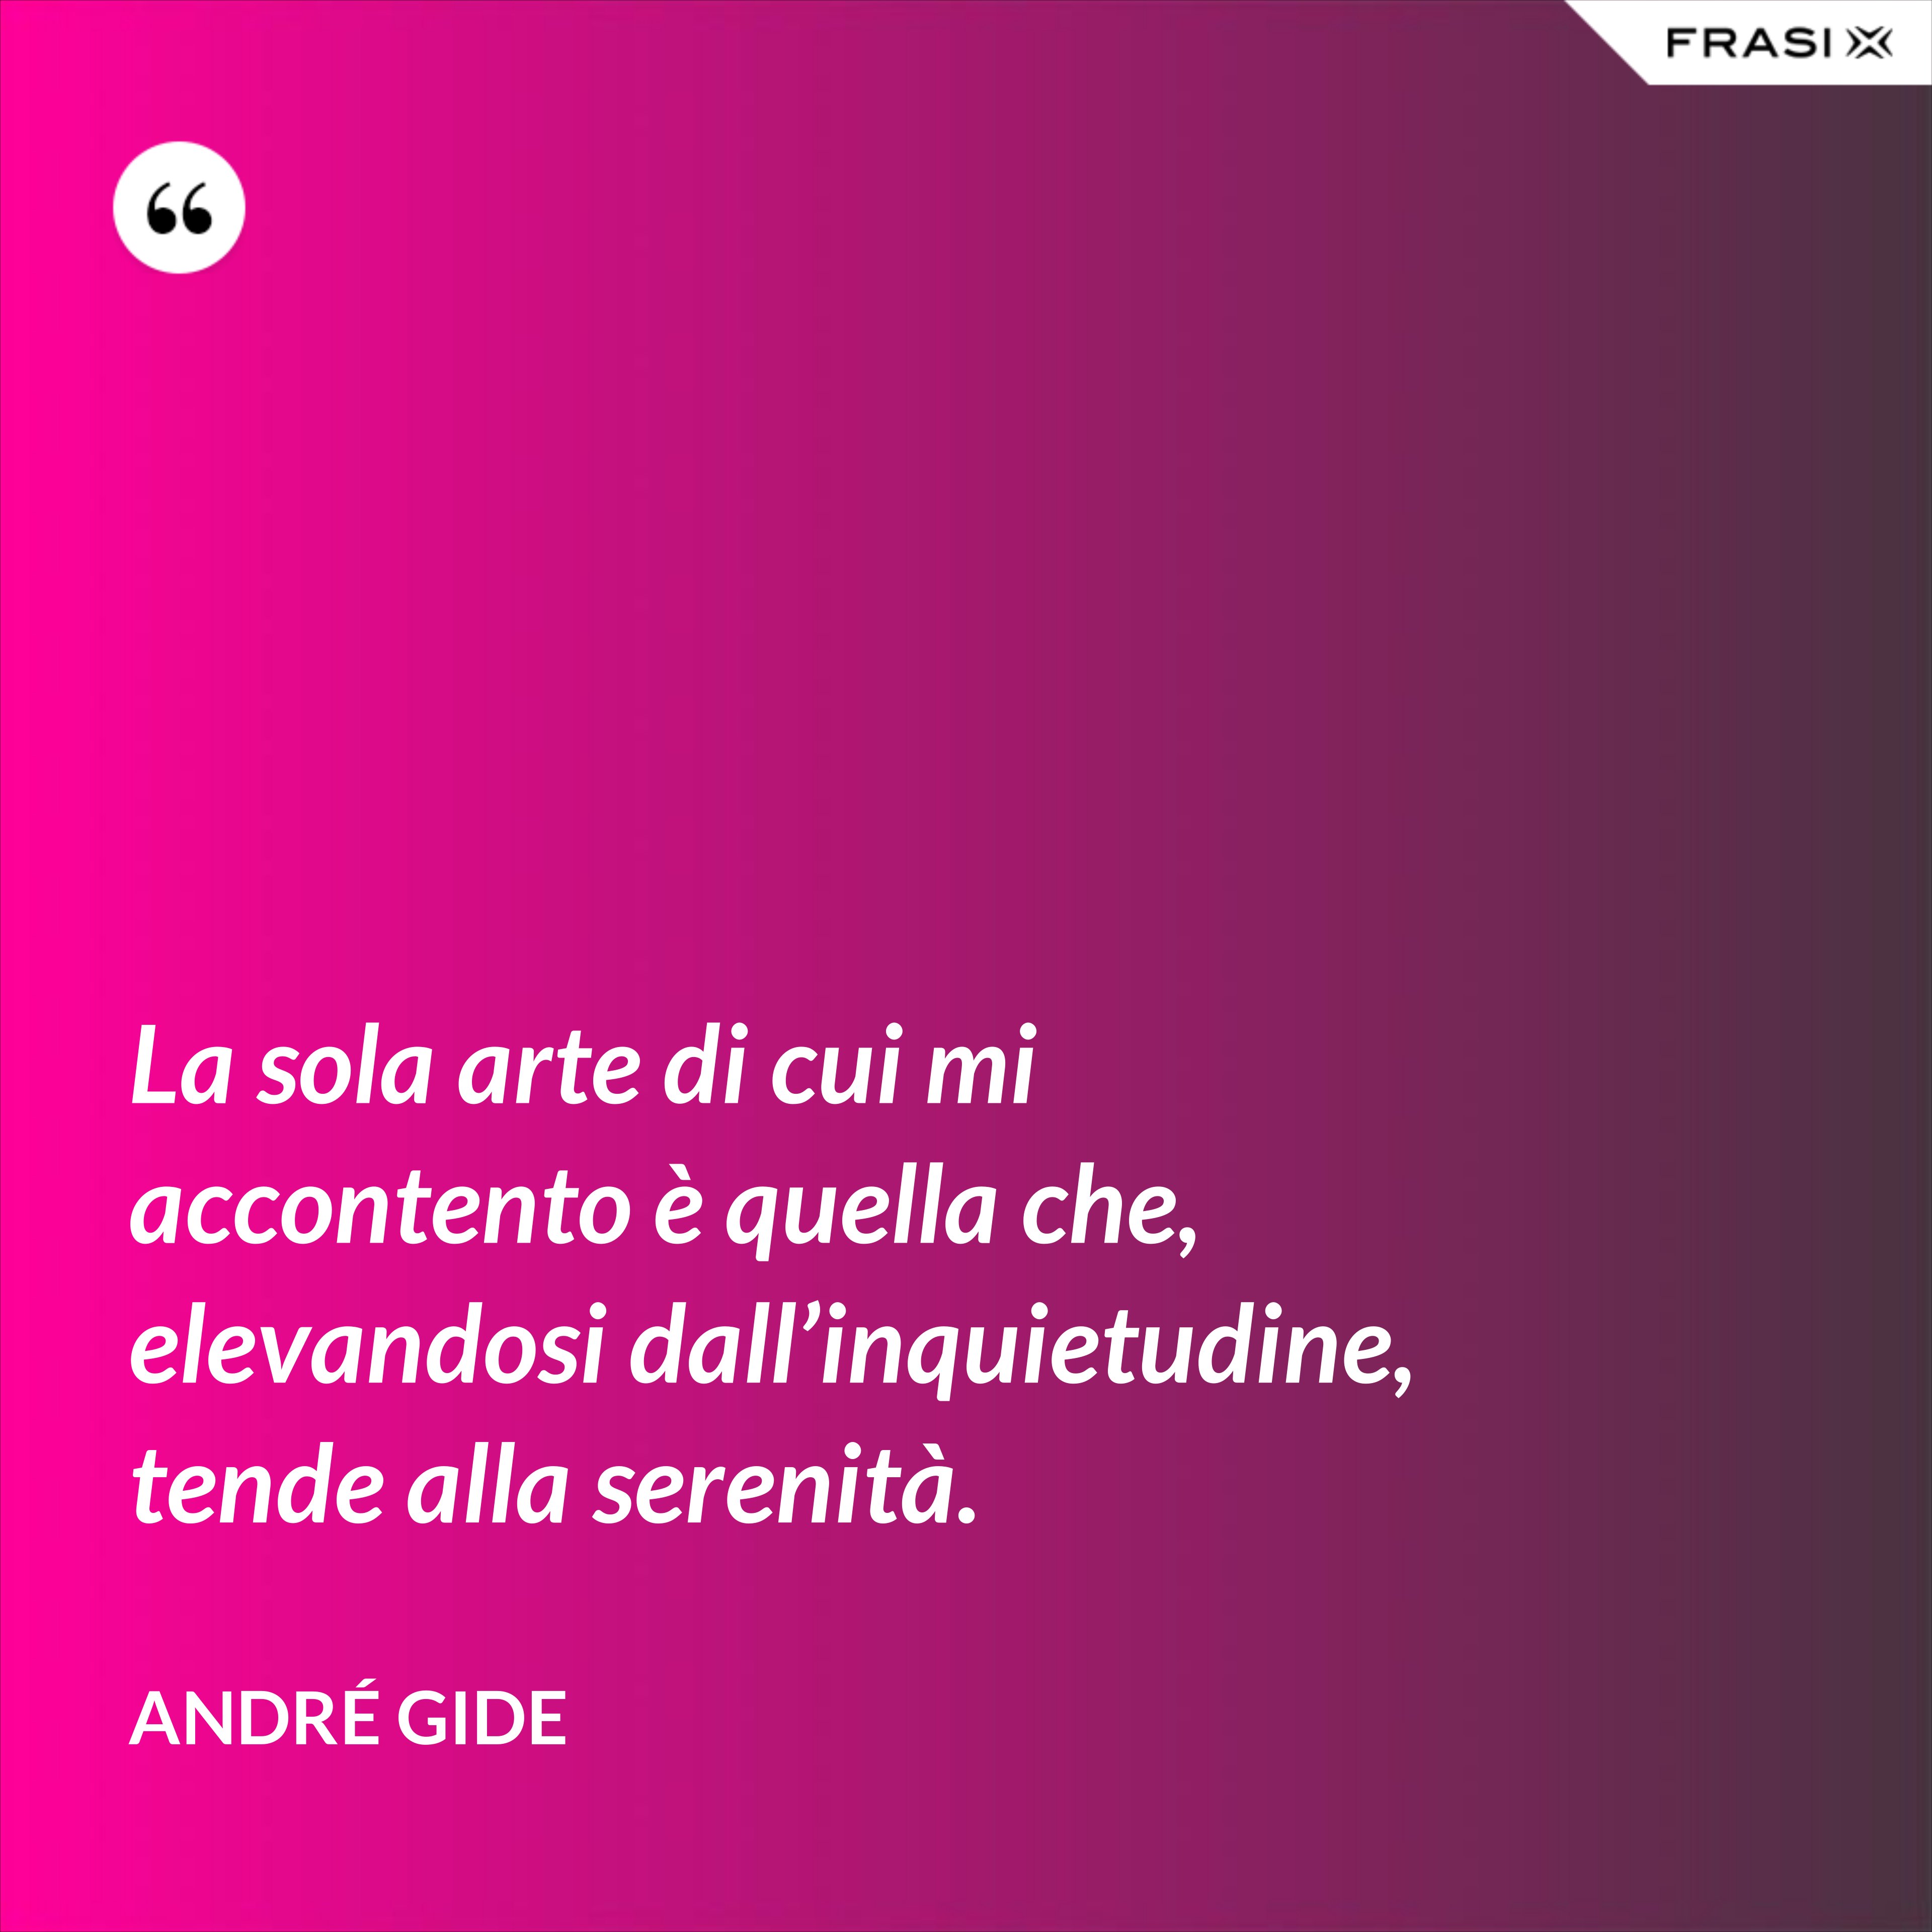 La sola arte di cui mi accontento è quella che, elevandosi dall’inquietudine, tende alla serenità. - André Gide